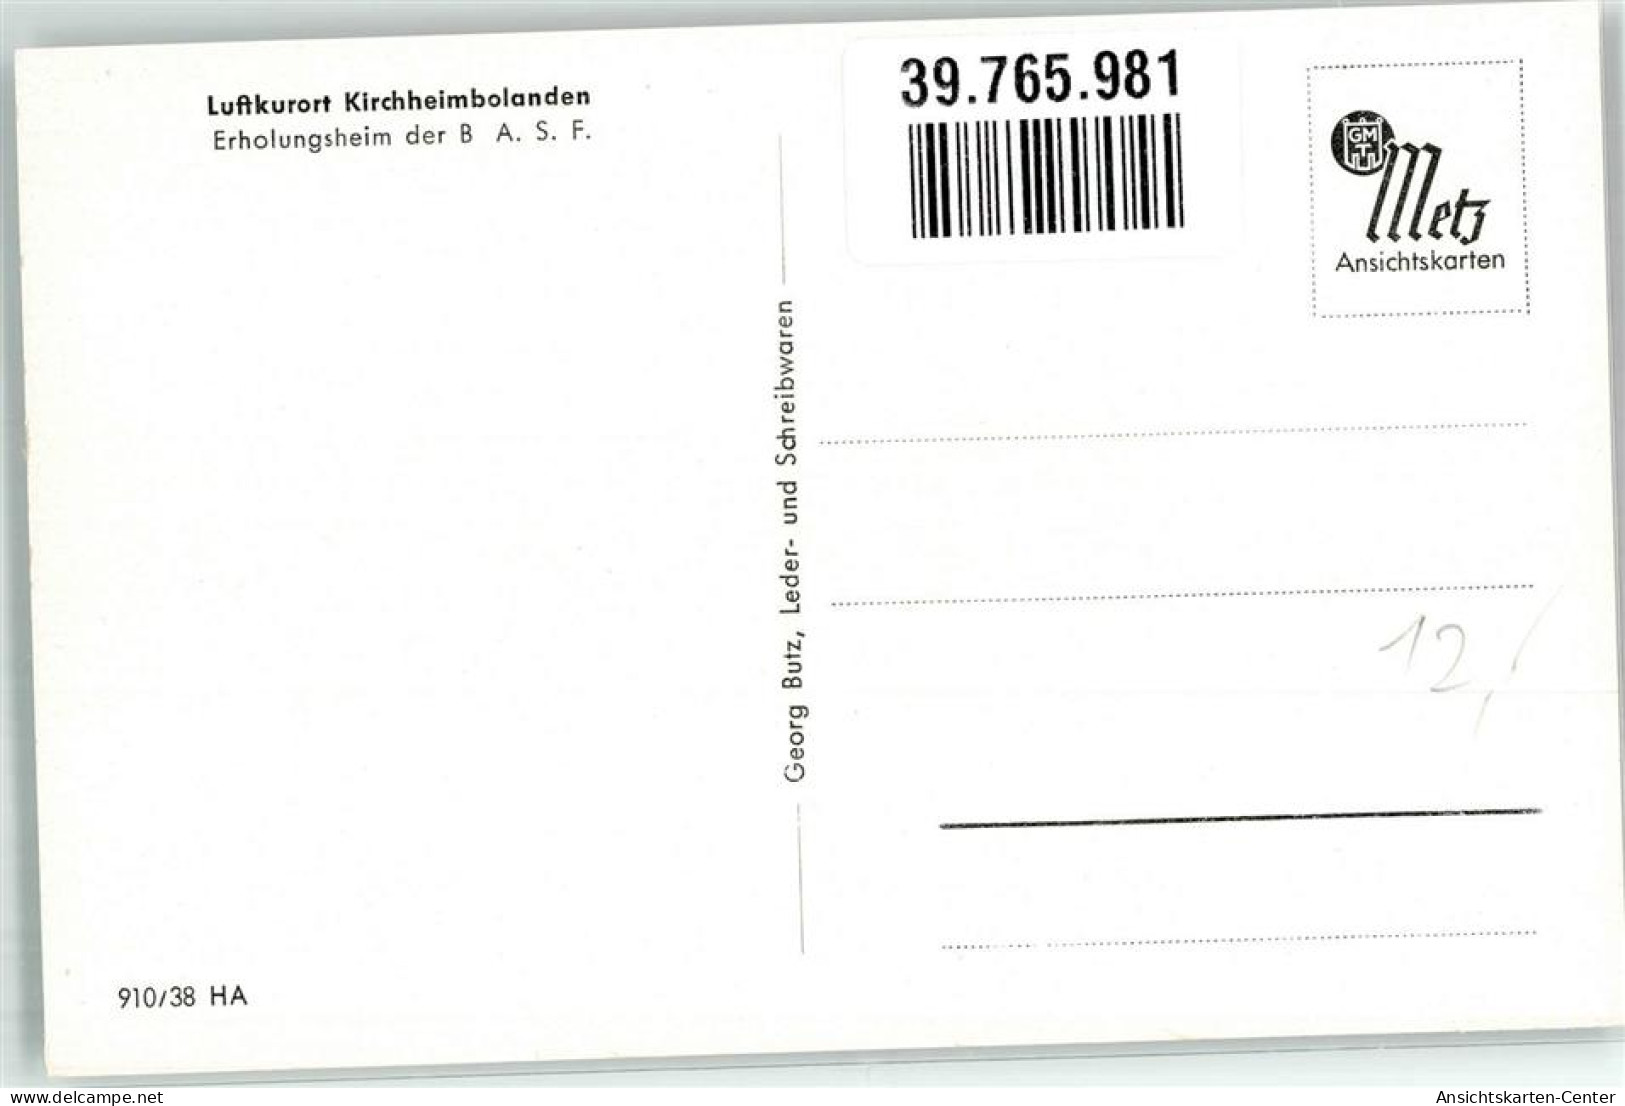 39765981 - Kirchheimbolanden - Kirchheimbolanden